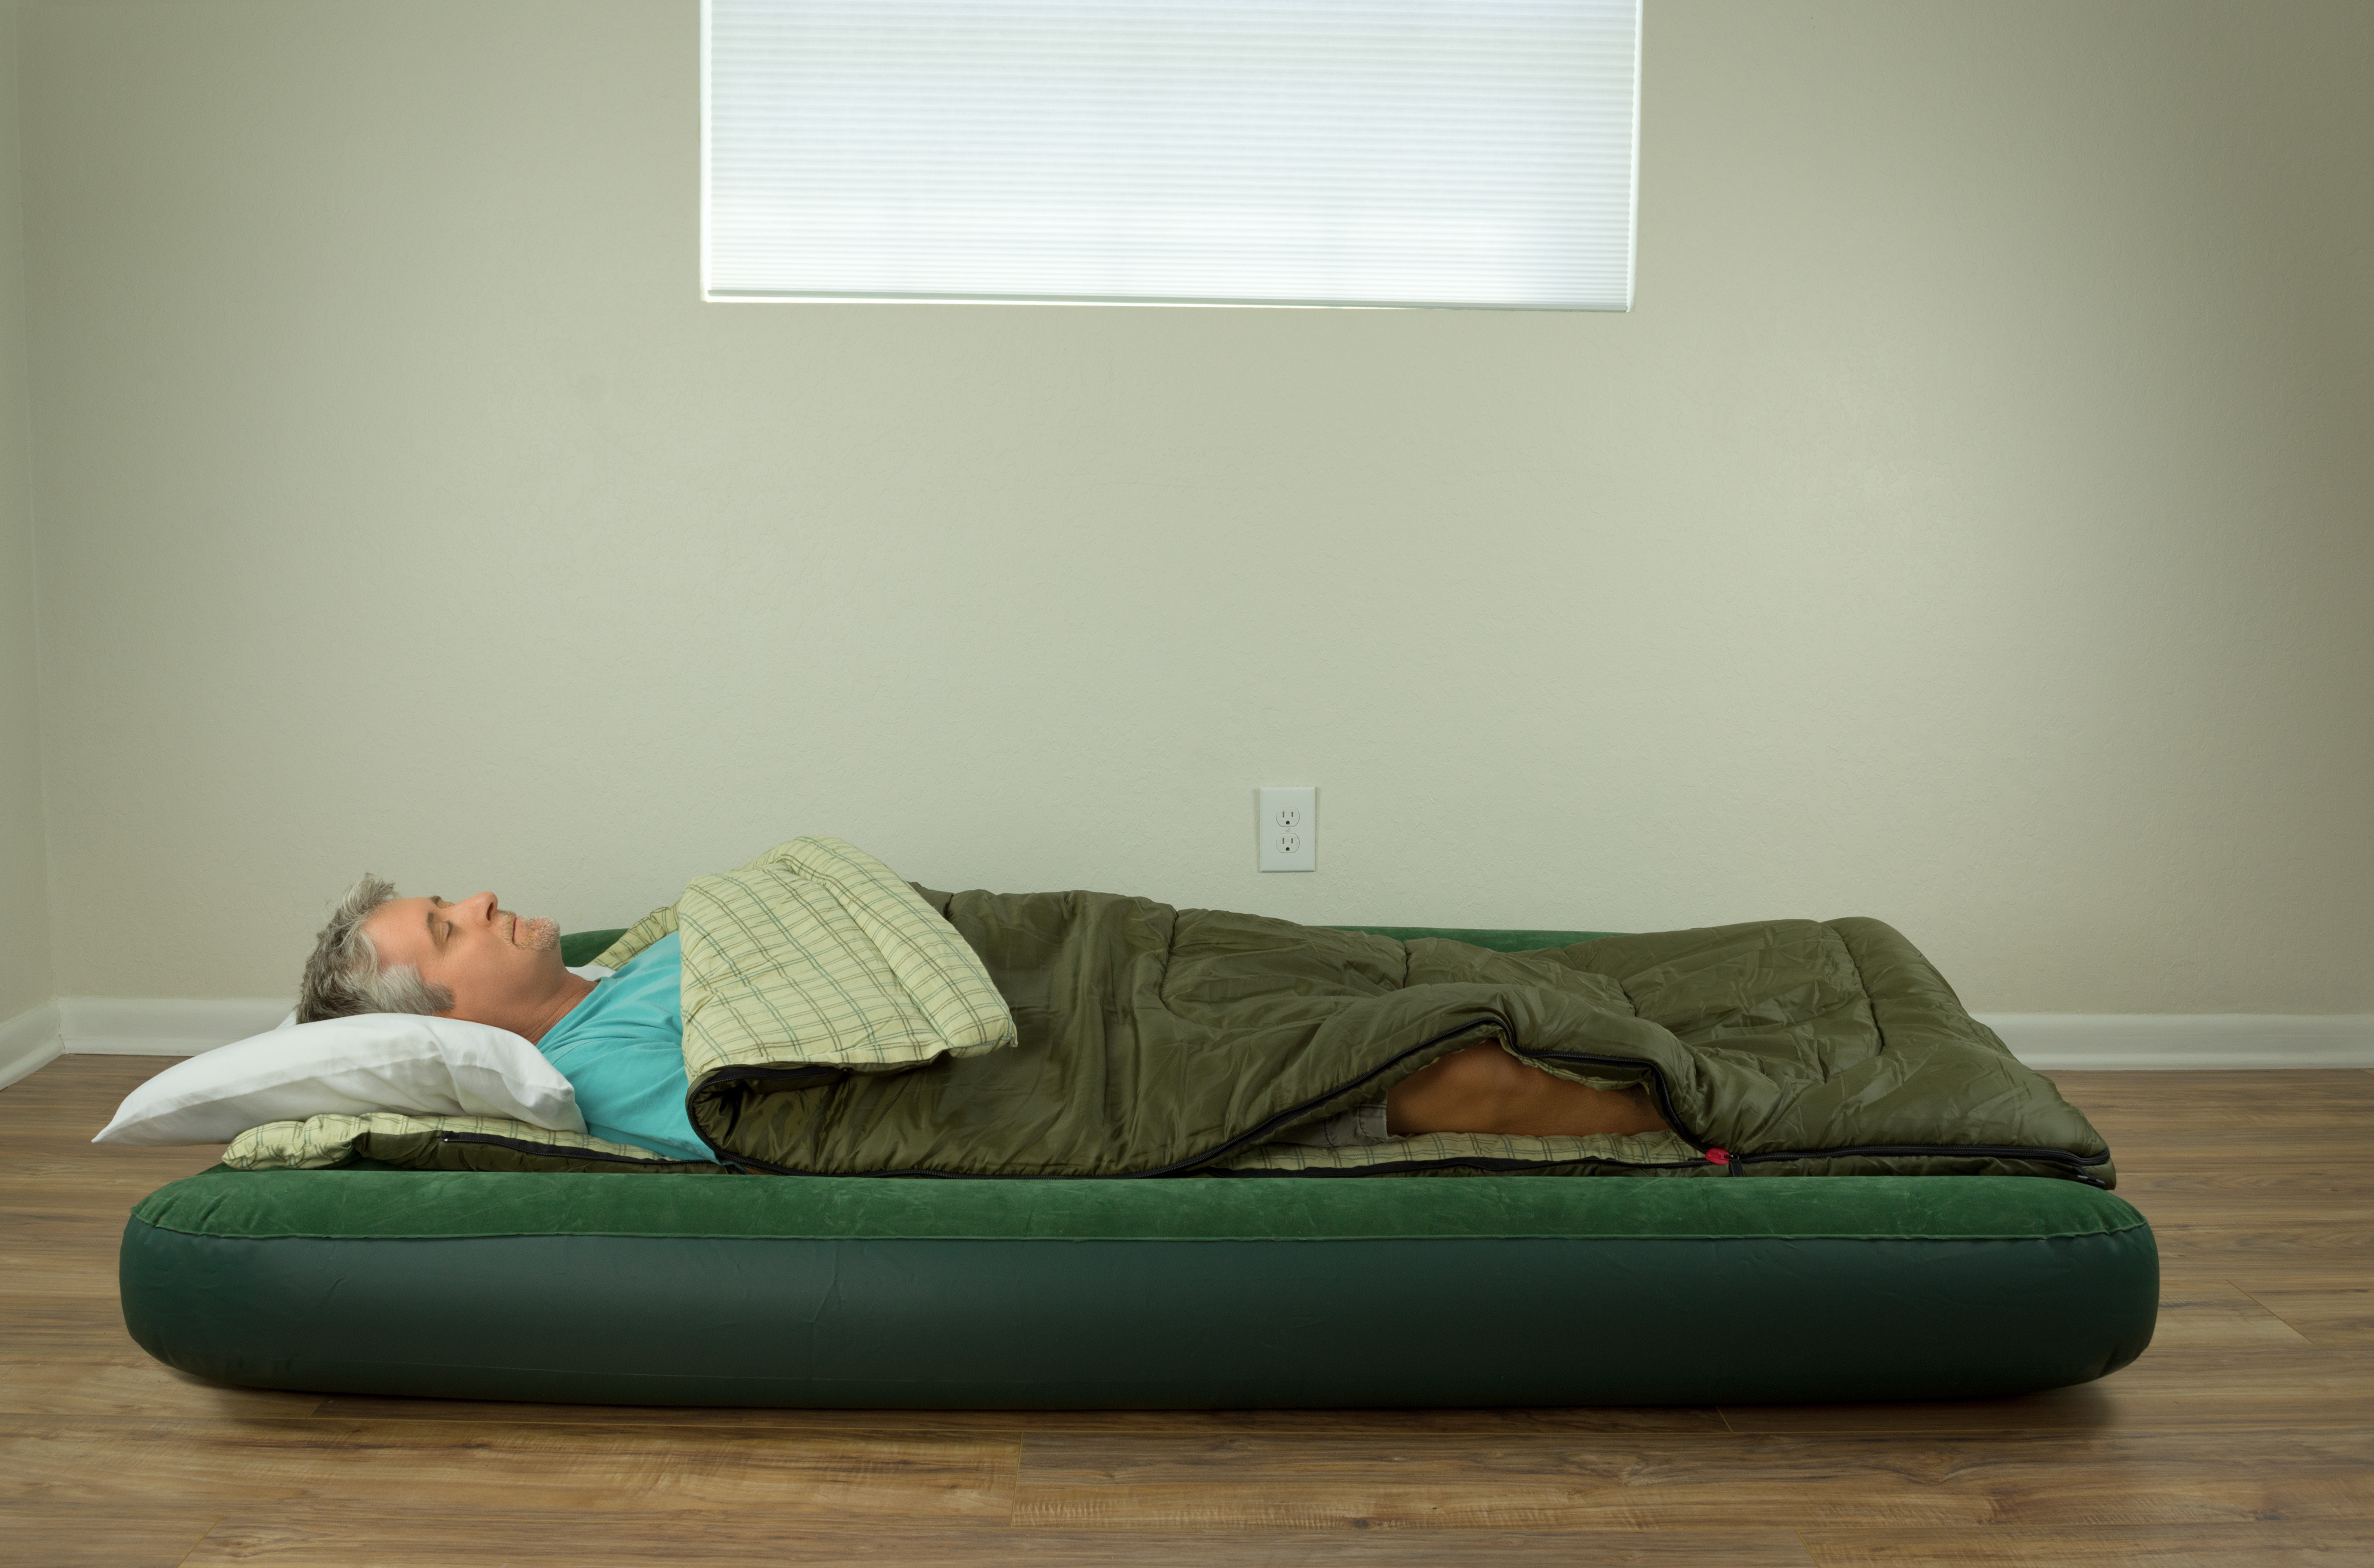 Man sleeping on a air mattress